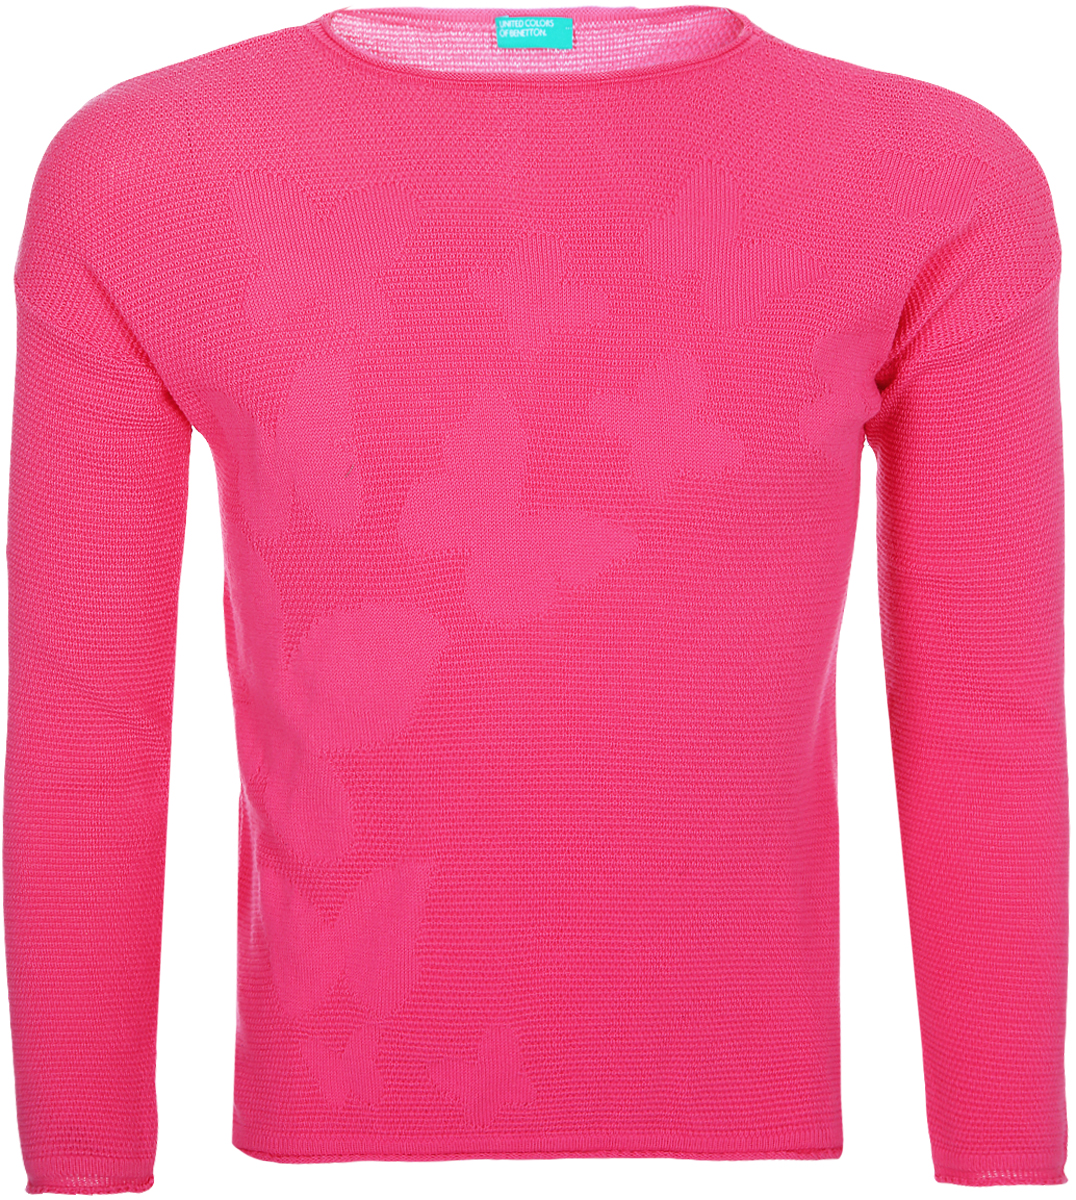 Джемпер для девочки United Colors of Benetton, цвет: ярко-розовый. 1098C1592_901. Размер 150